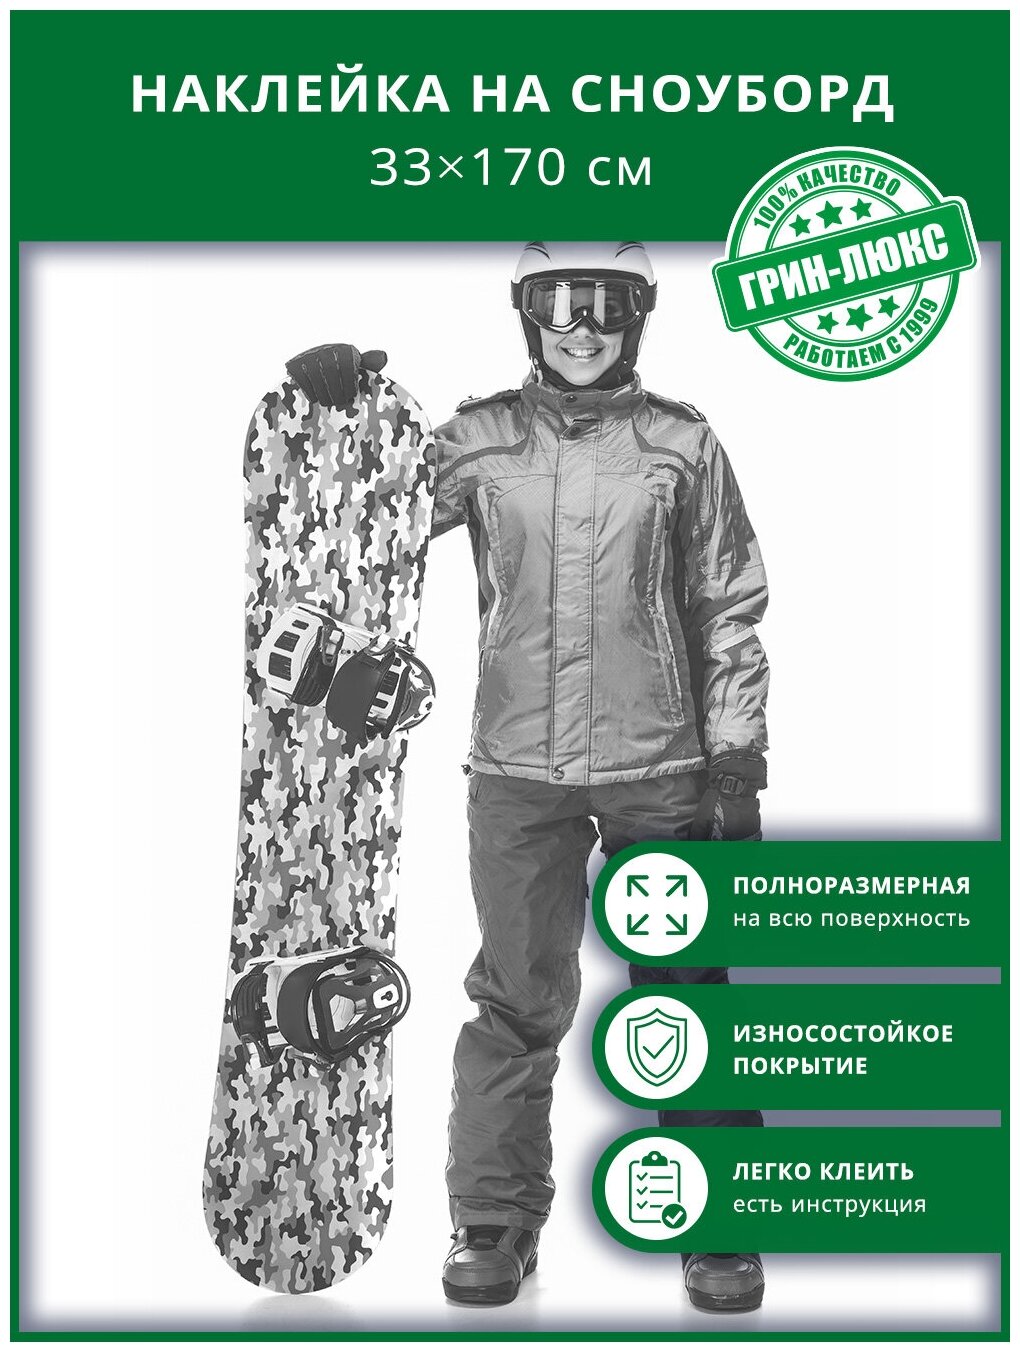 Наклейка на сноуборд с защитным глянцевым покрытием 33х170 см "Камуфляж охотничий"